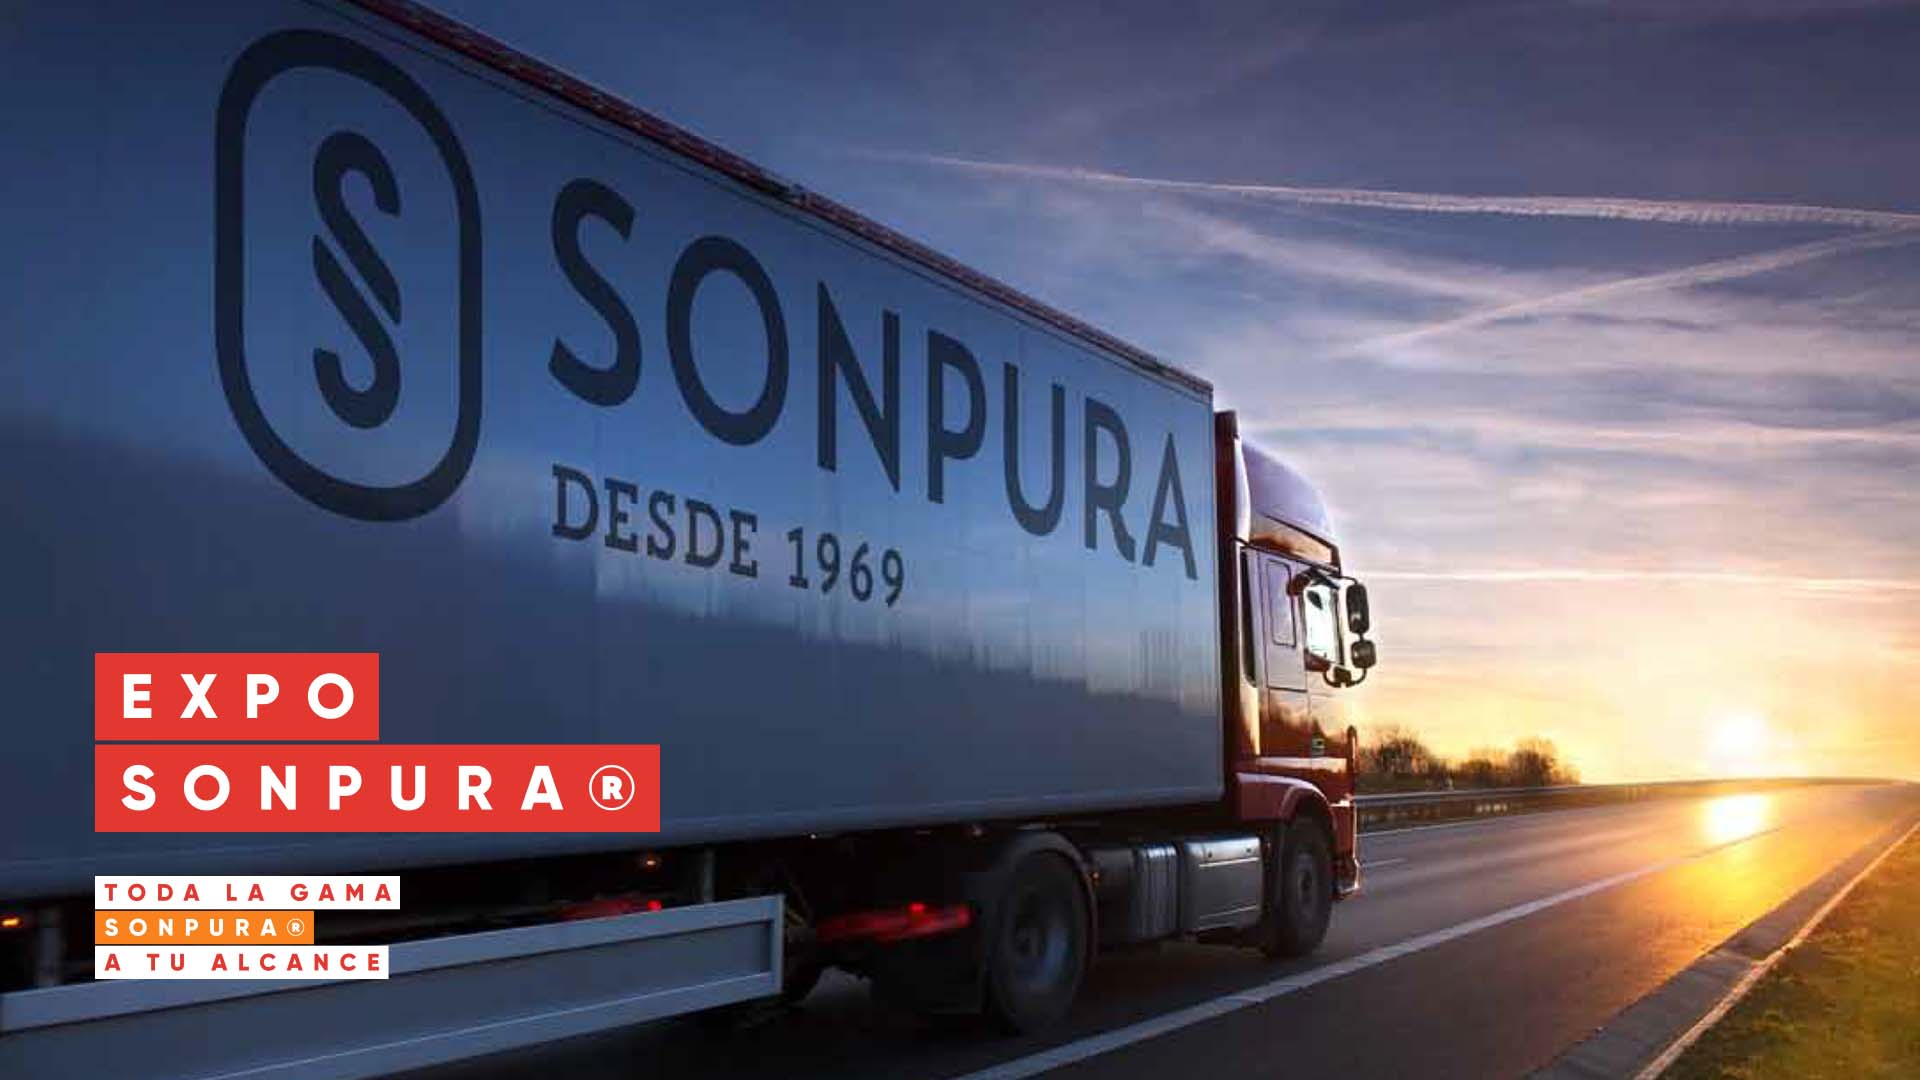 Sonpura® desde 1969 - De generación en generación.